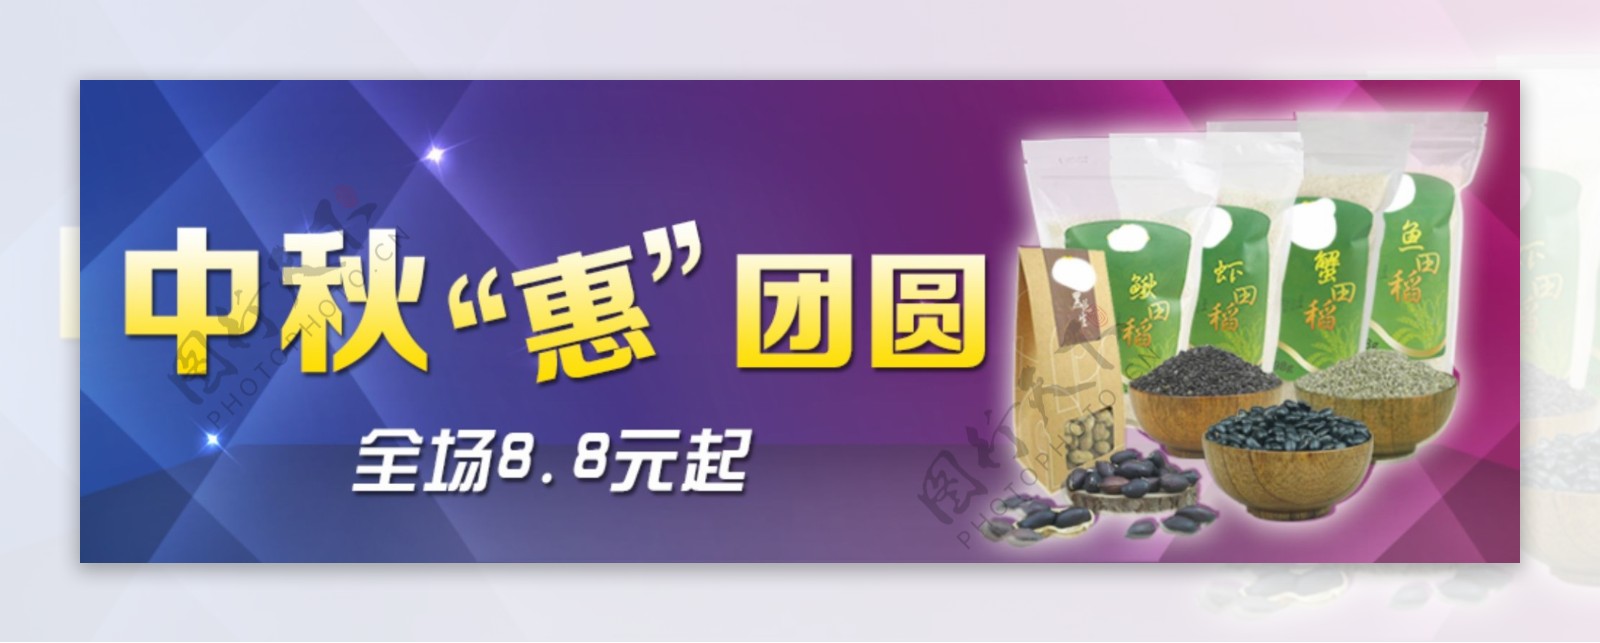 中秋节广告图